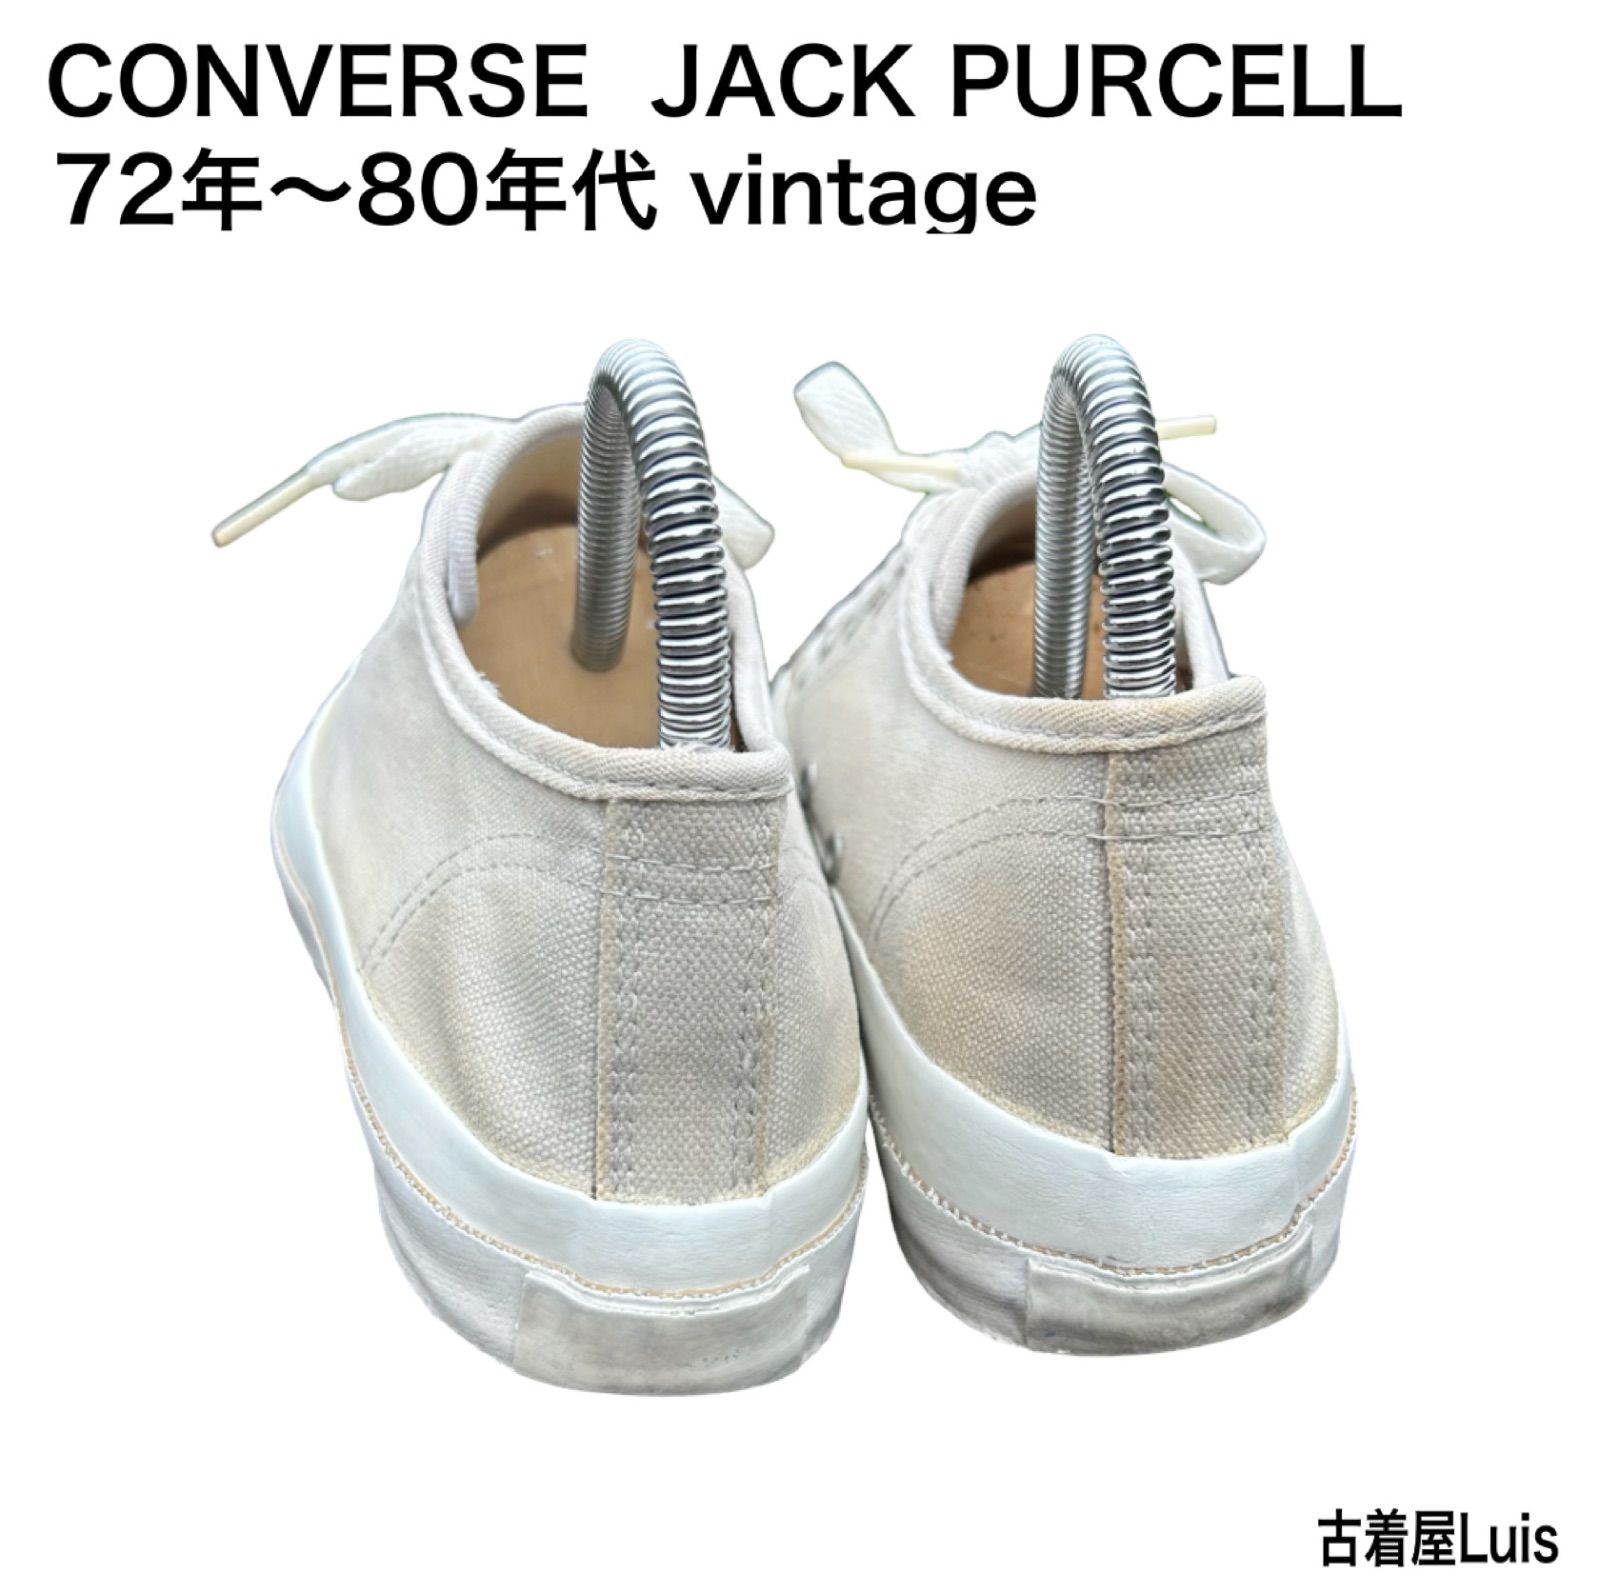 稀少 70s vintage USA製 コンバース JACK PURCELL ジャックパーセル